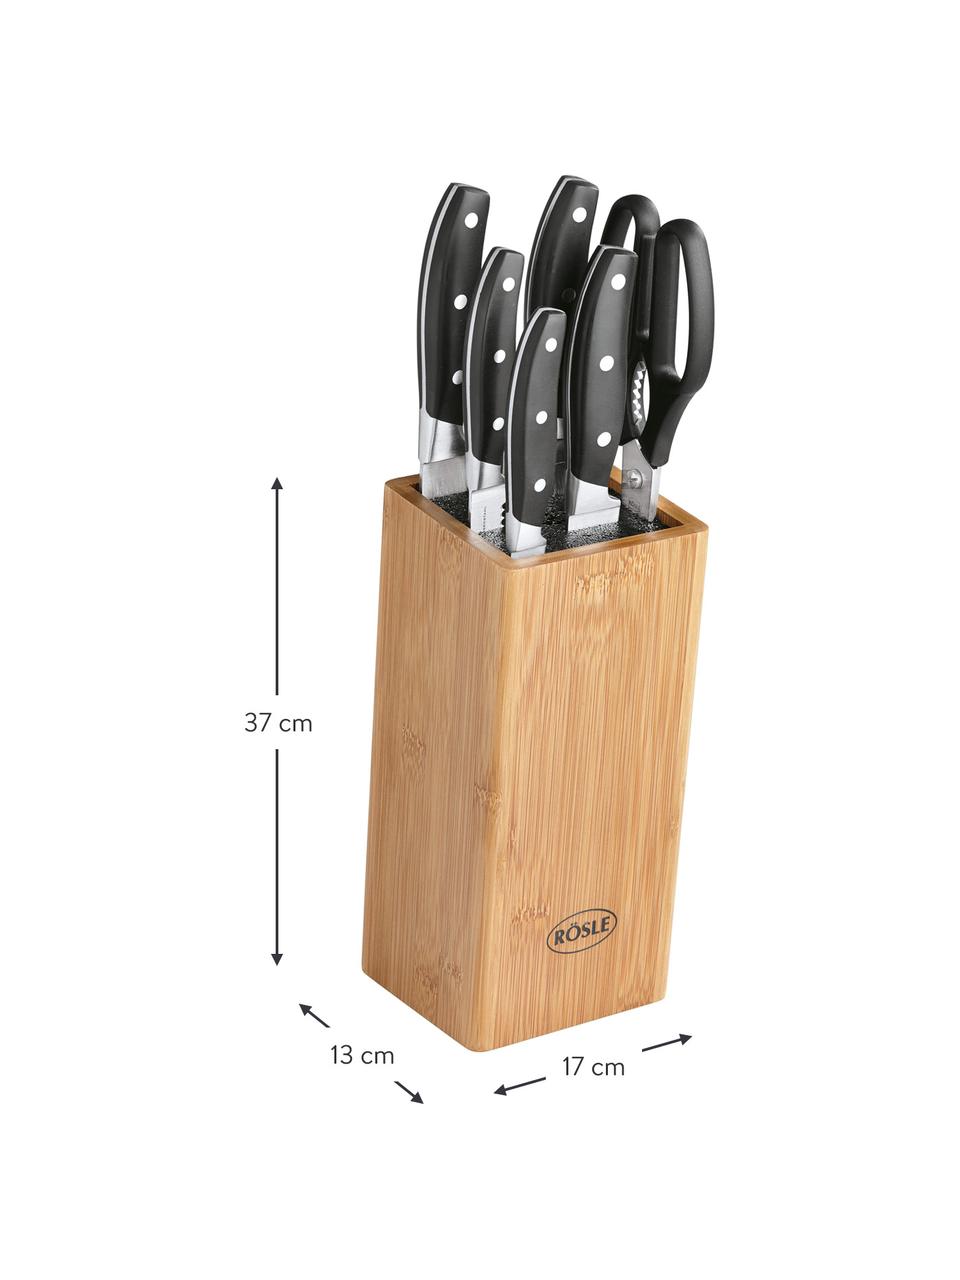 Messerblock Cuisine mit 5 Messern und 1 Schere, Messer: rostfreier Stahl X50CrMOV, Griff: Kunststoff, Braun, Verschiedene Größen